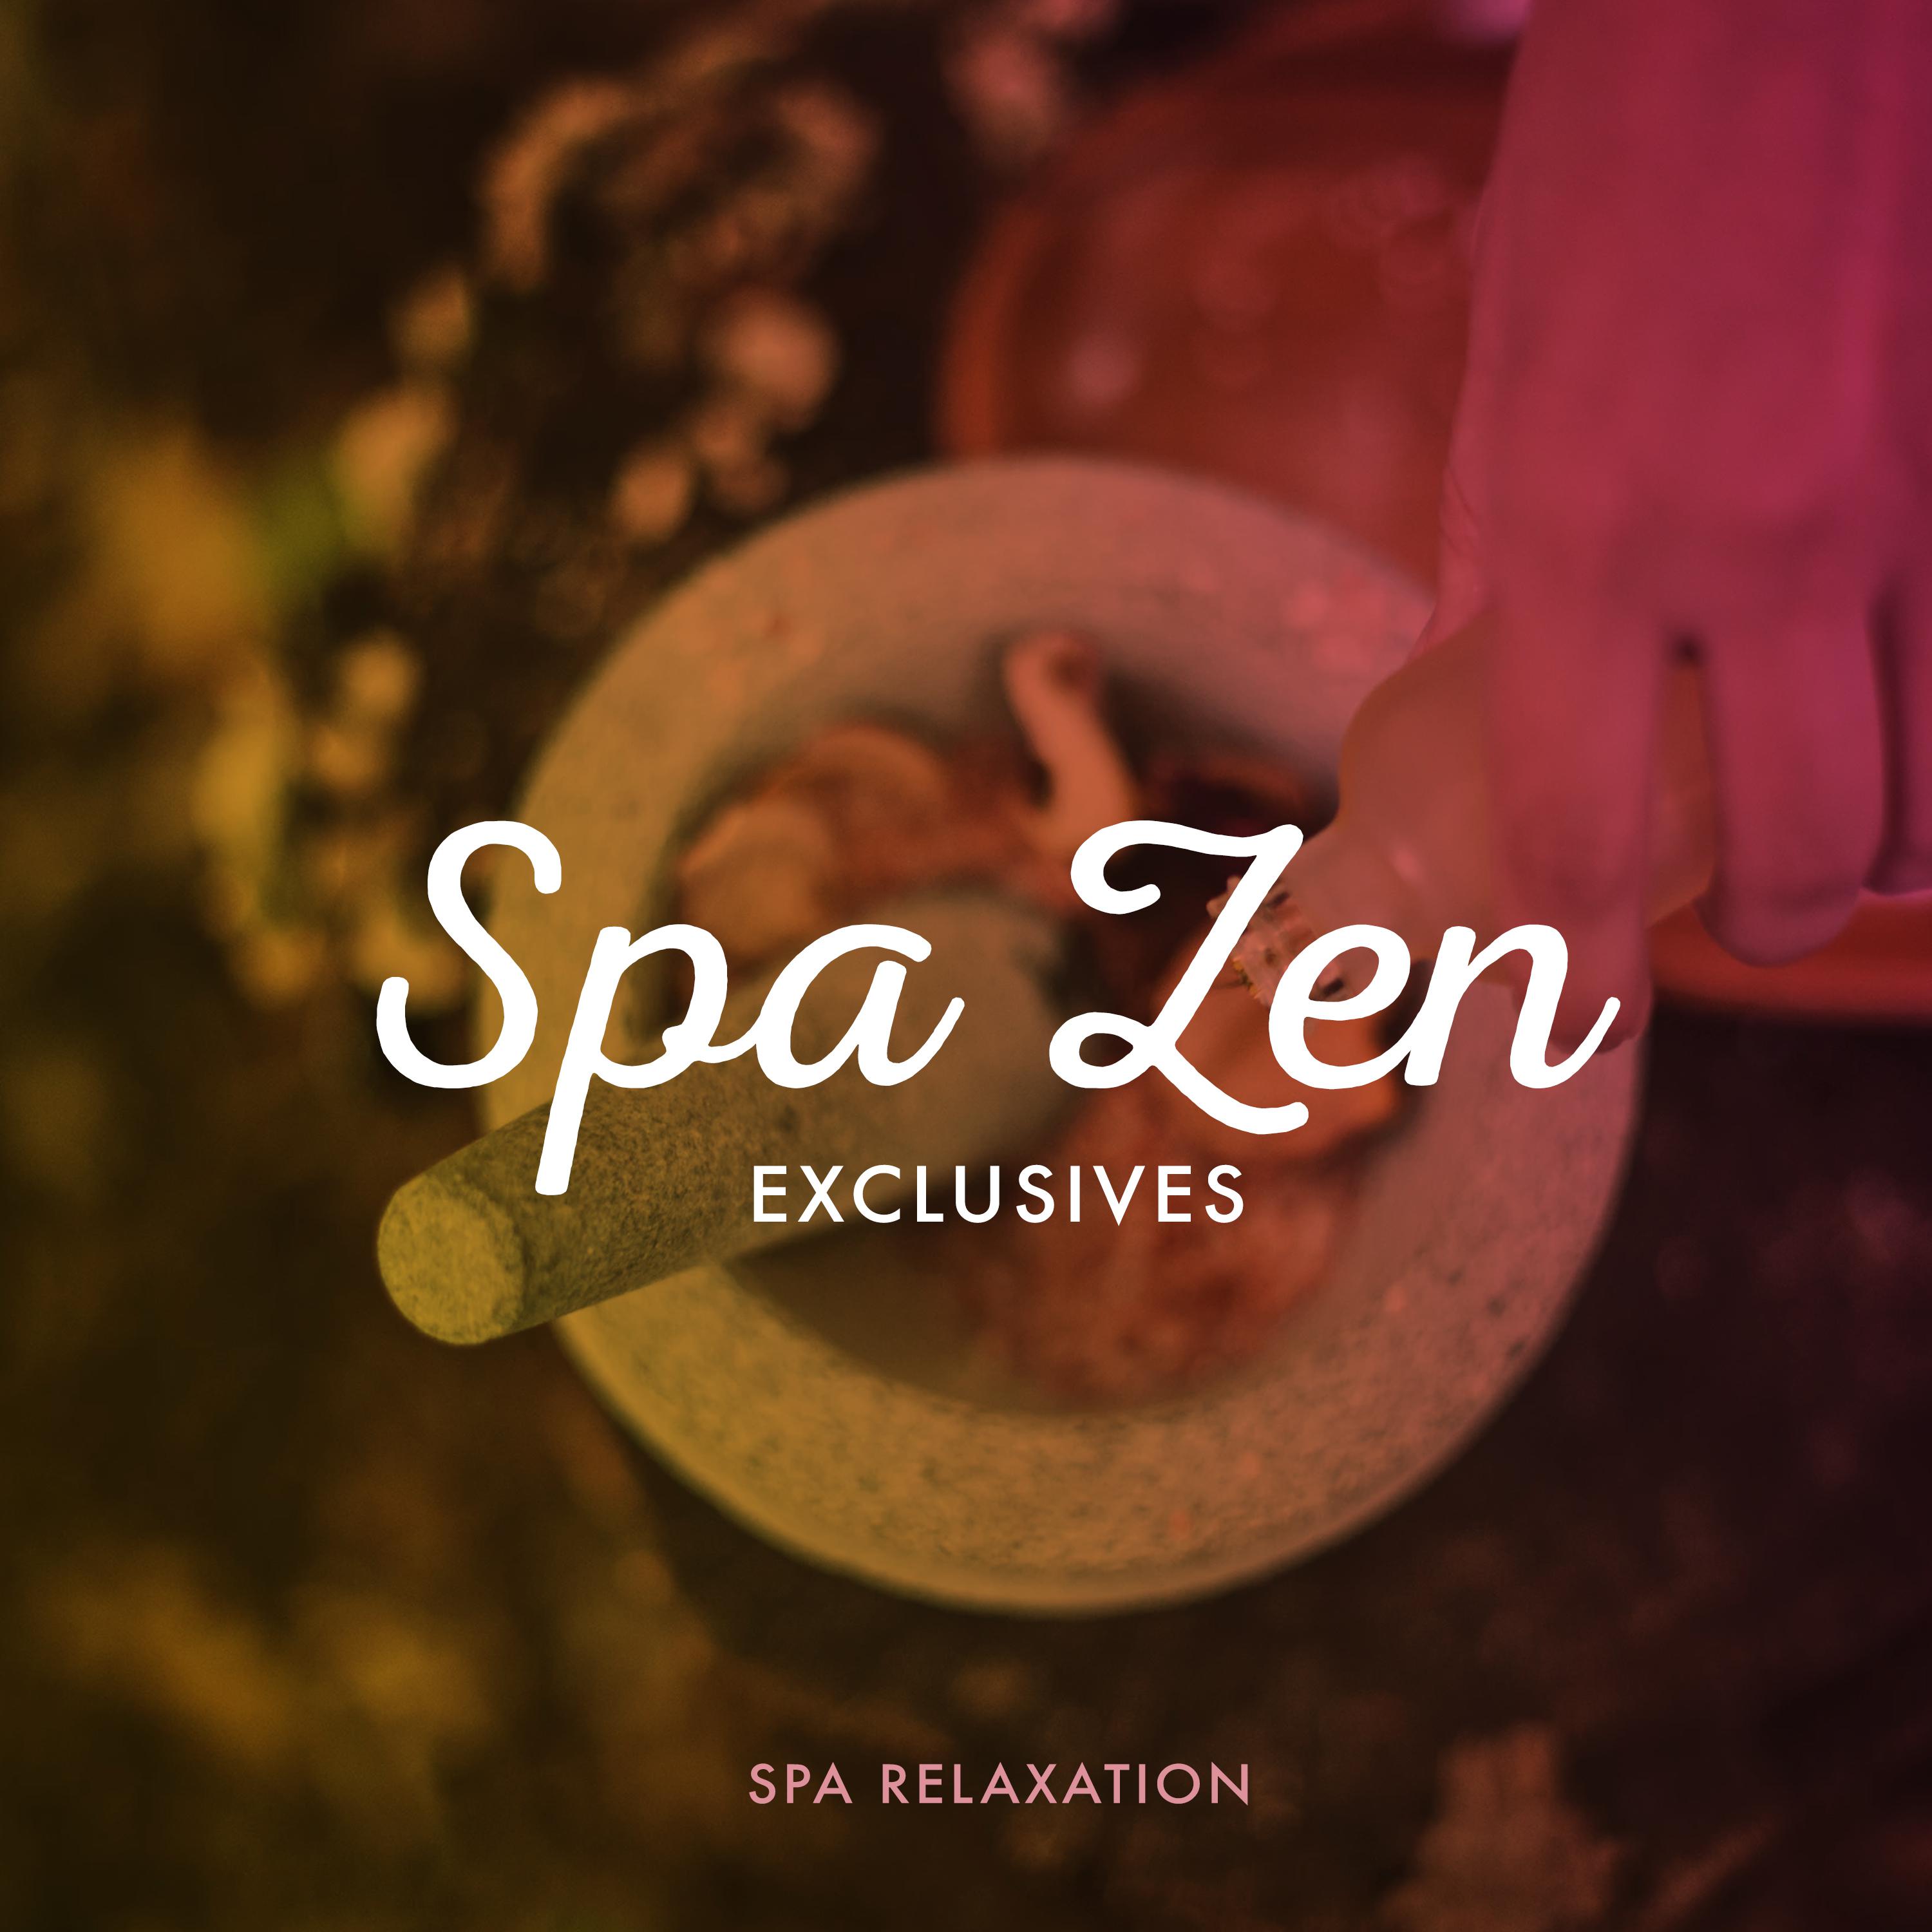 Spa Zen Exclusives